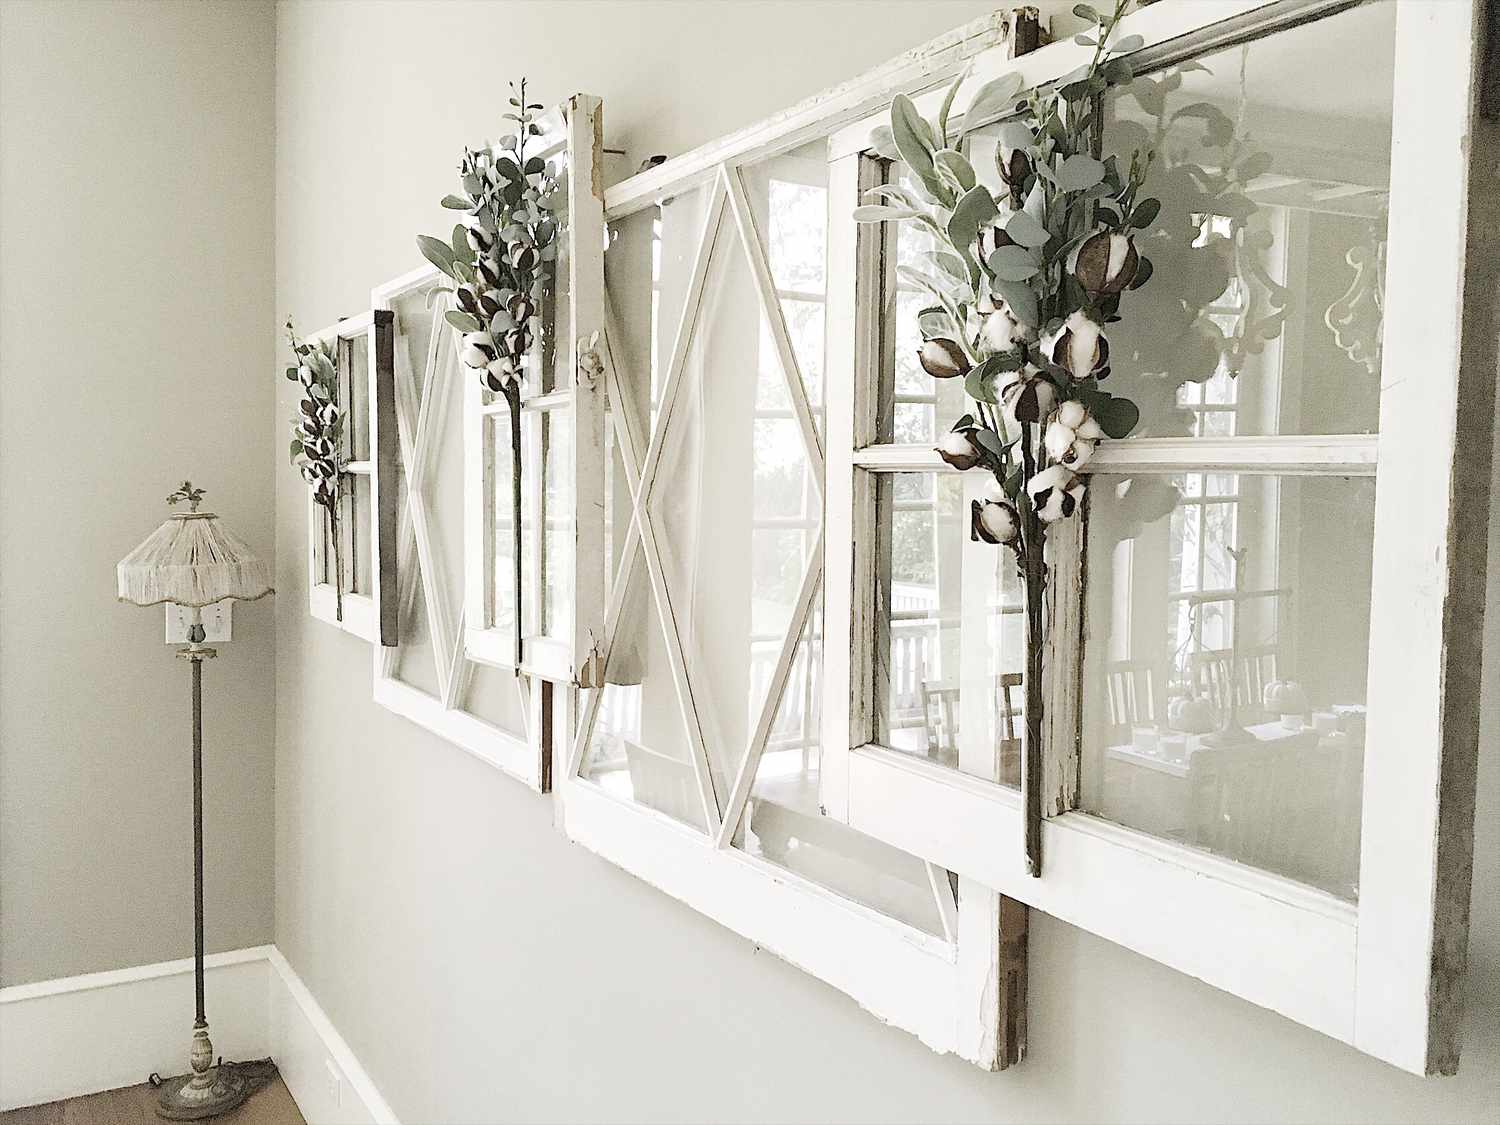 Eine Deko-Idee mit Fensterrahmen, indem man mehrere Fenster an eine Wand hängt